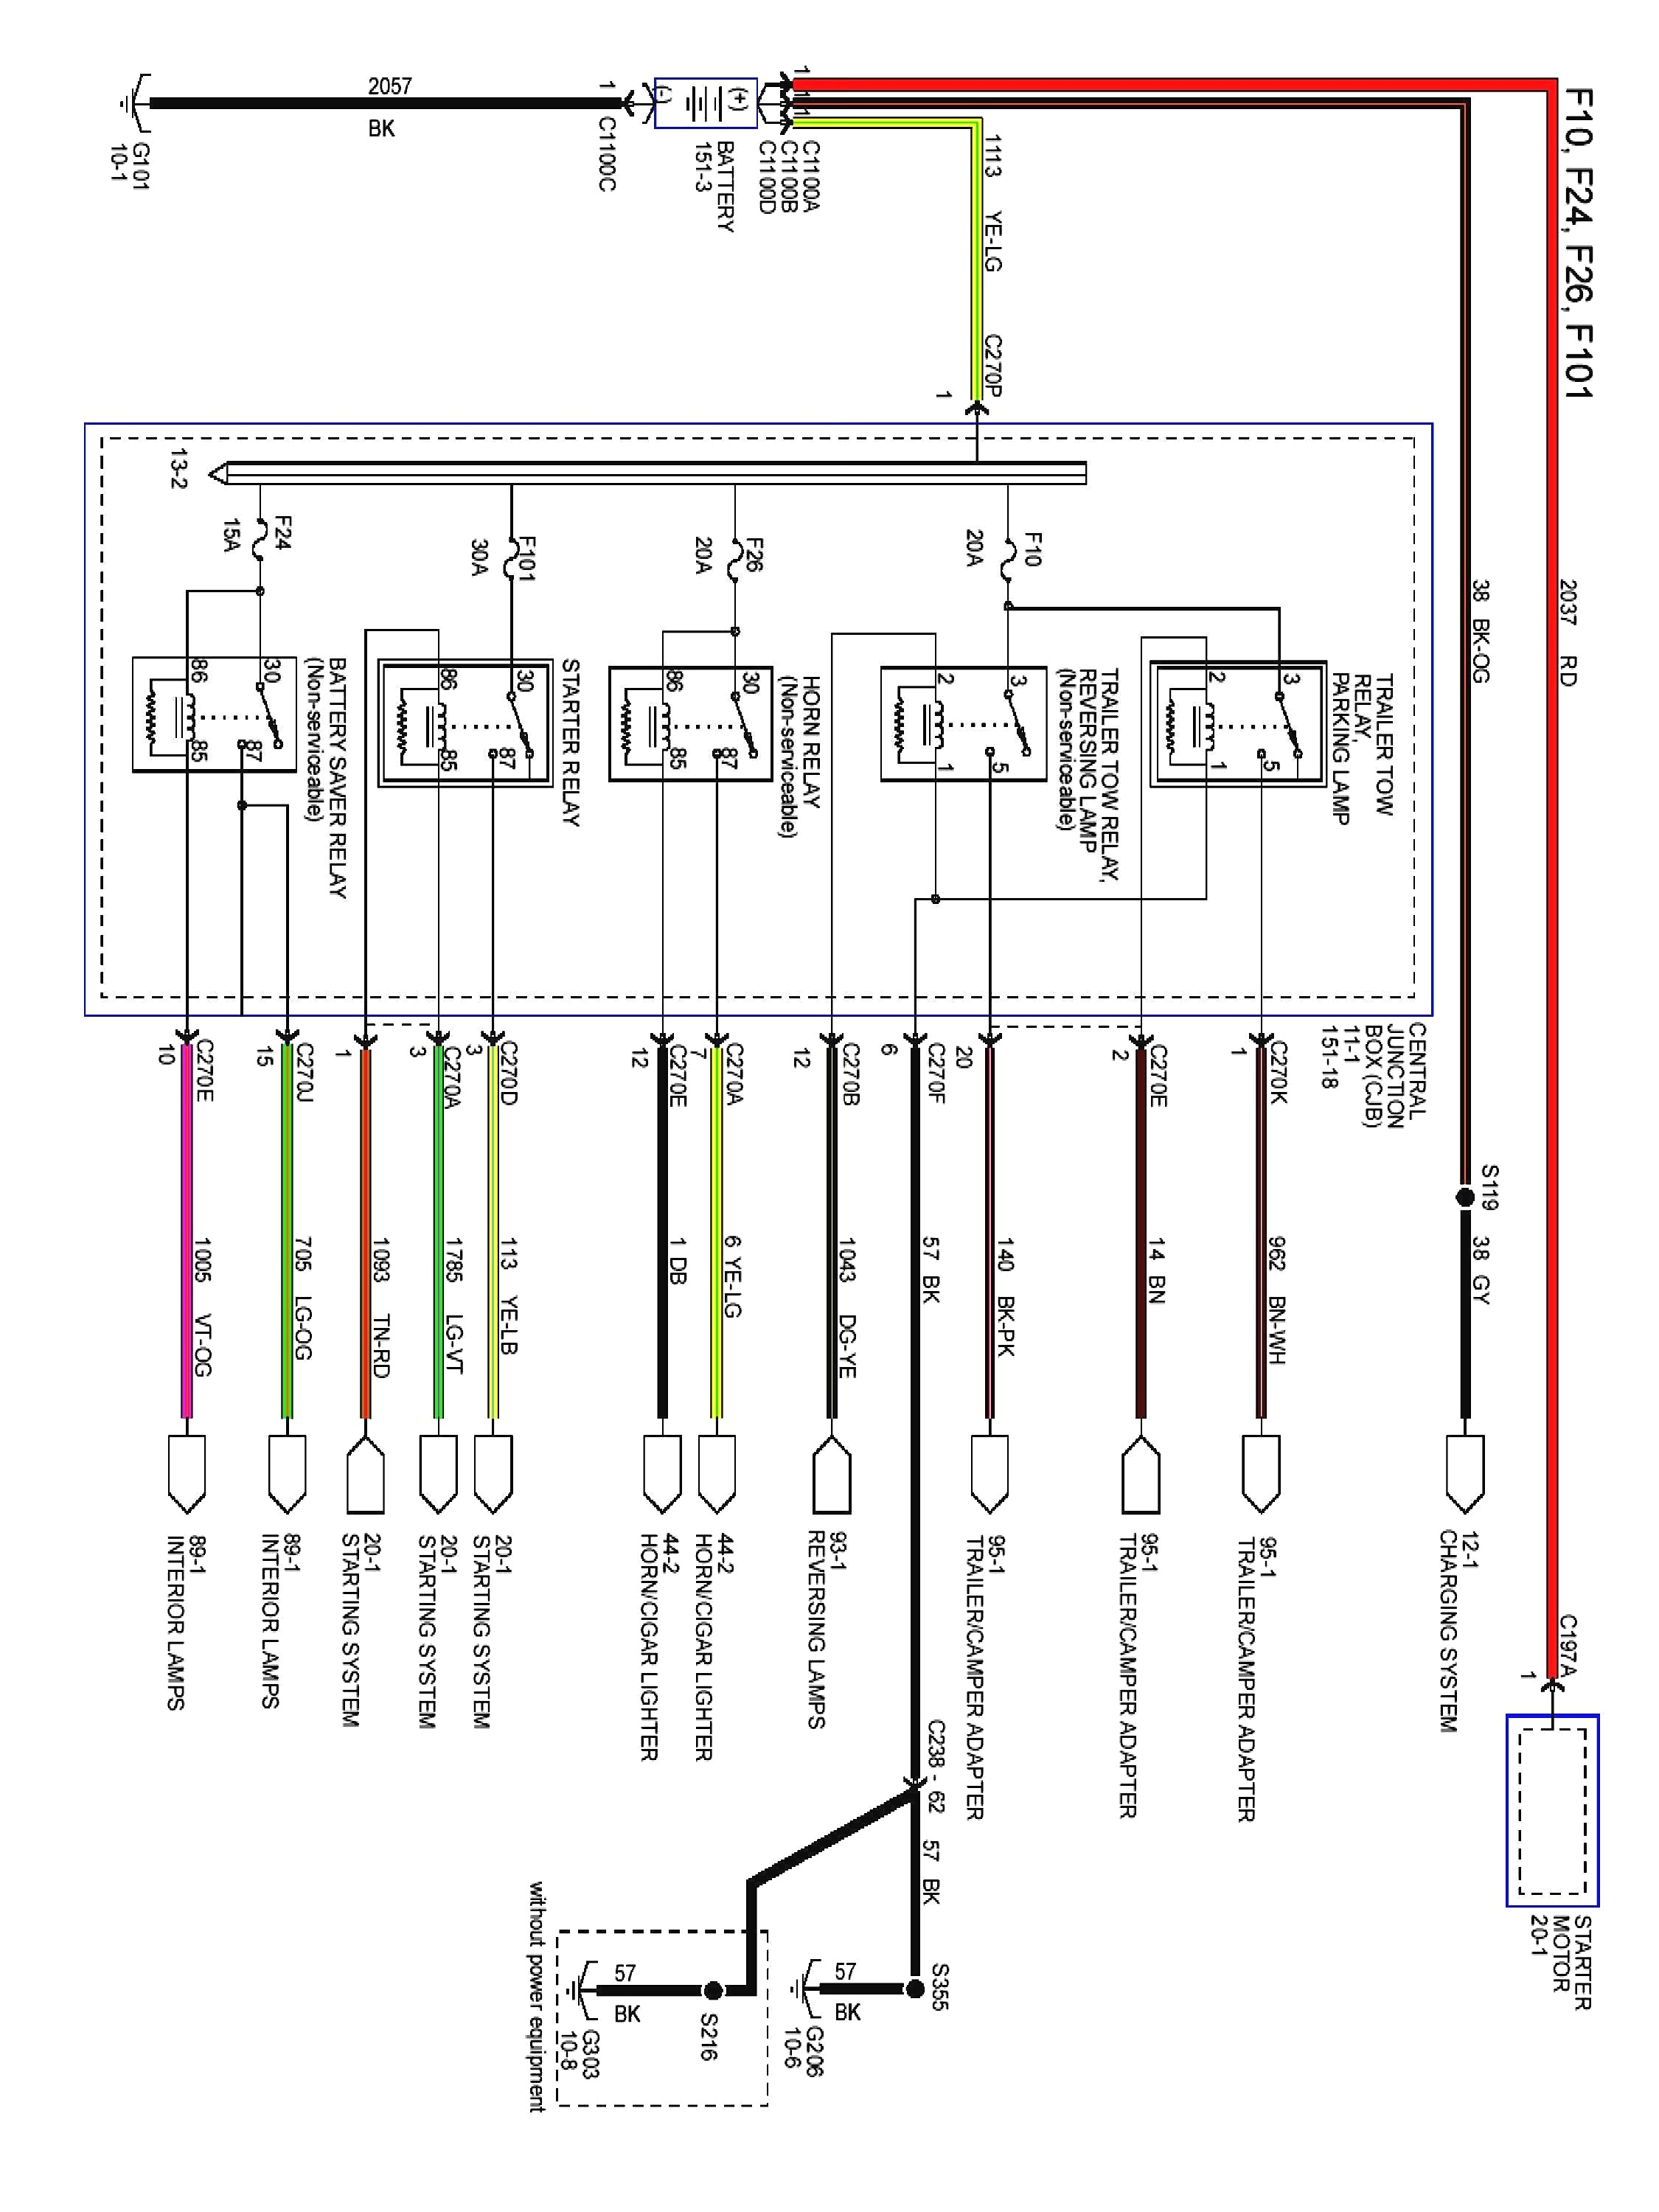 2003 e350 ac diagram wiring diagram new 2003 e350 radio wiring diagram 2003 e350 ac diagram